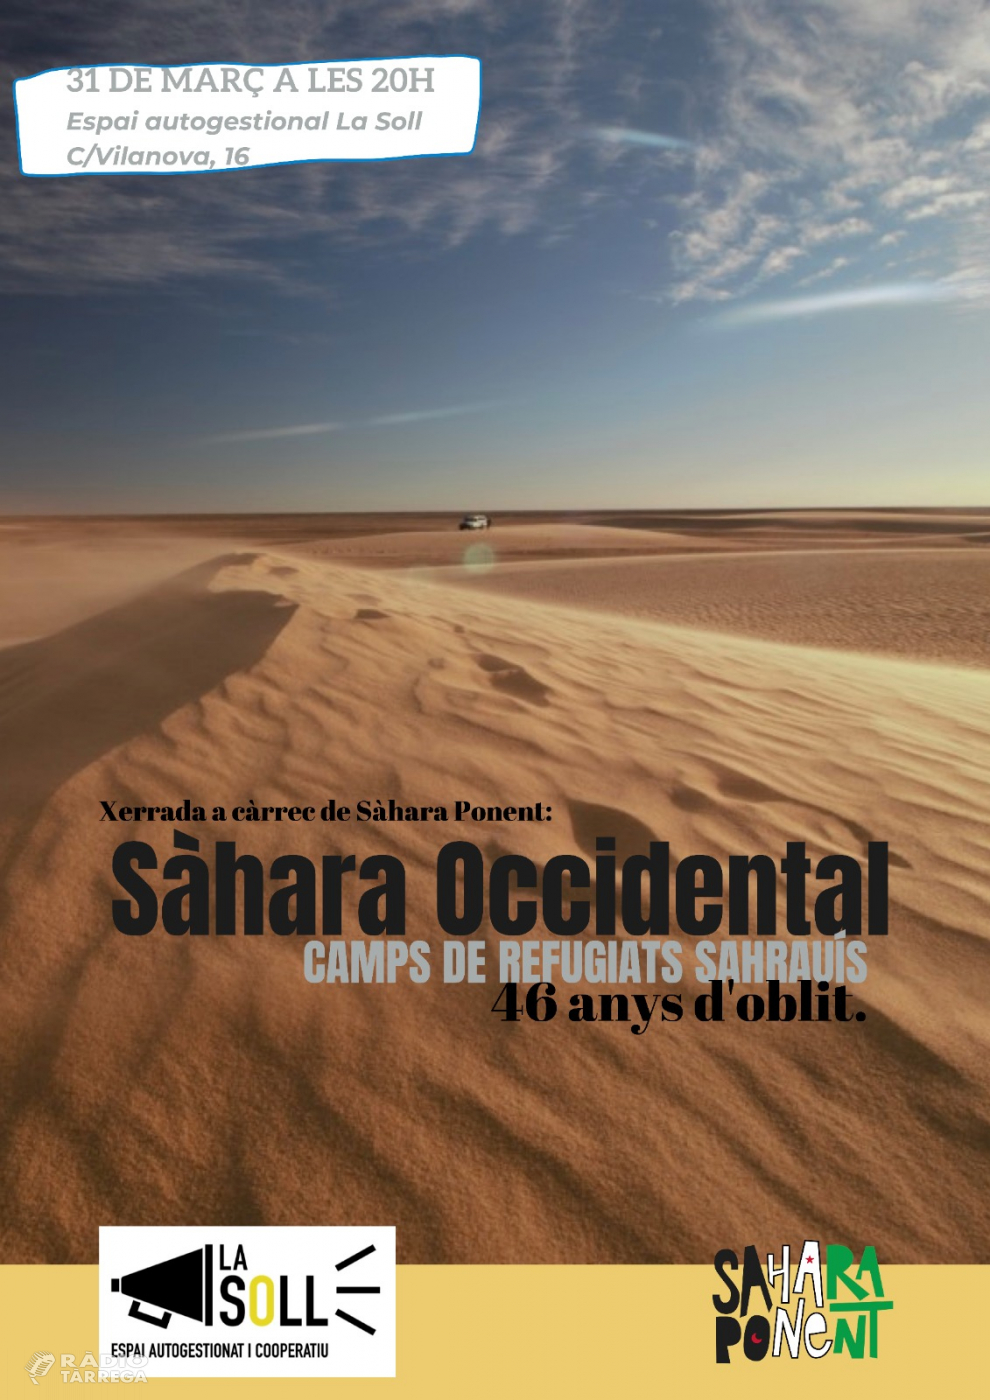 La Soll organitza dijous a les 20h una xerrada sobre la situació del Sàhara Occidental